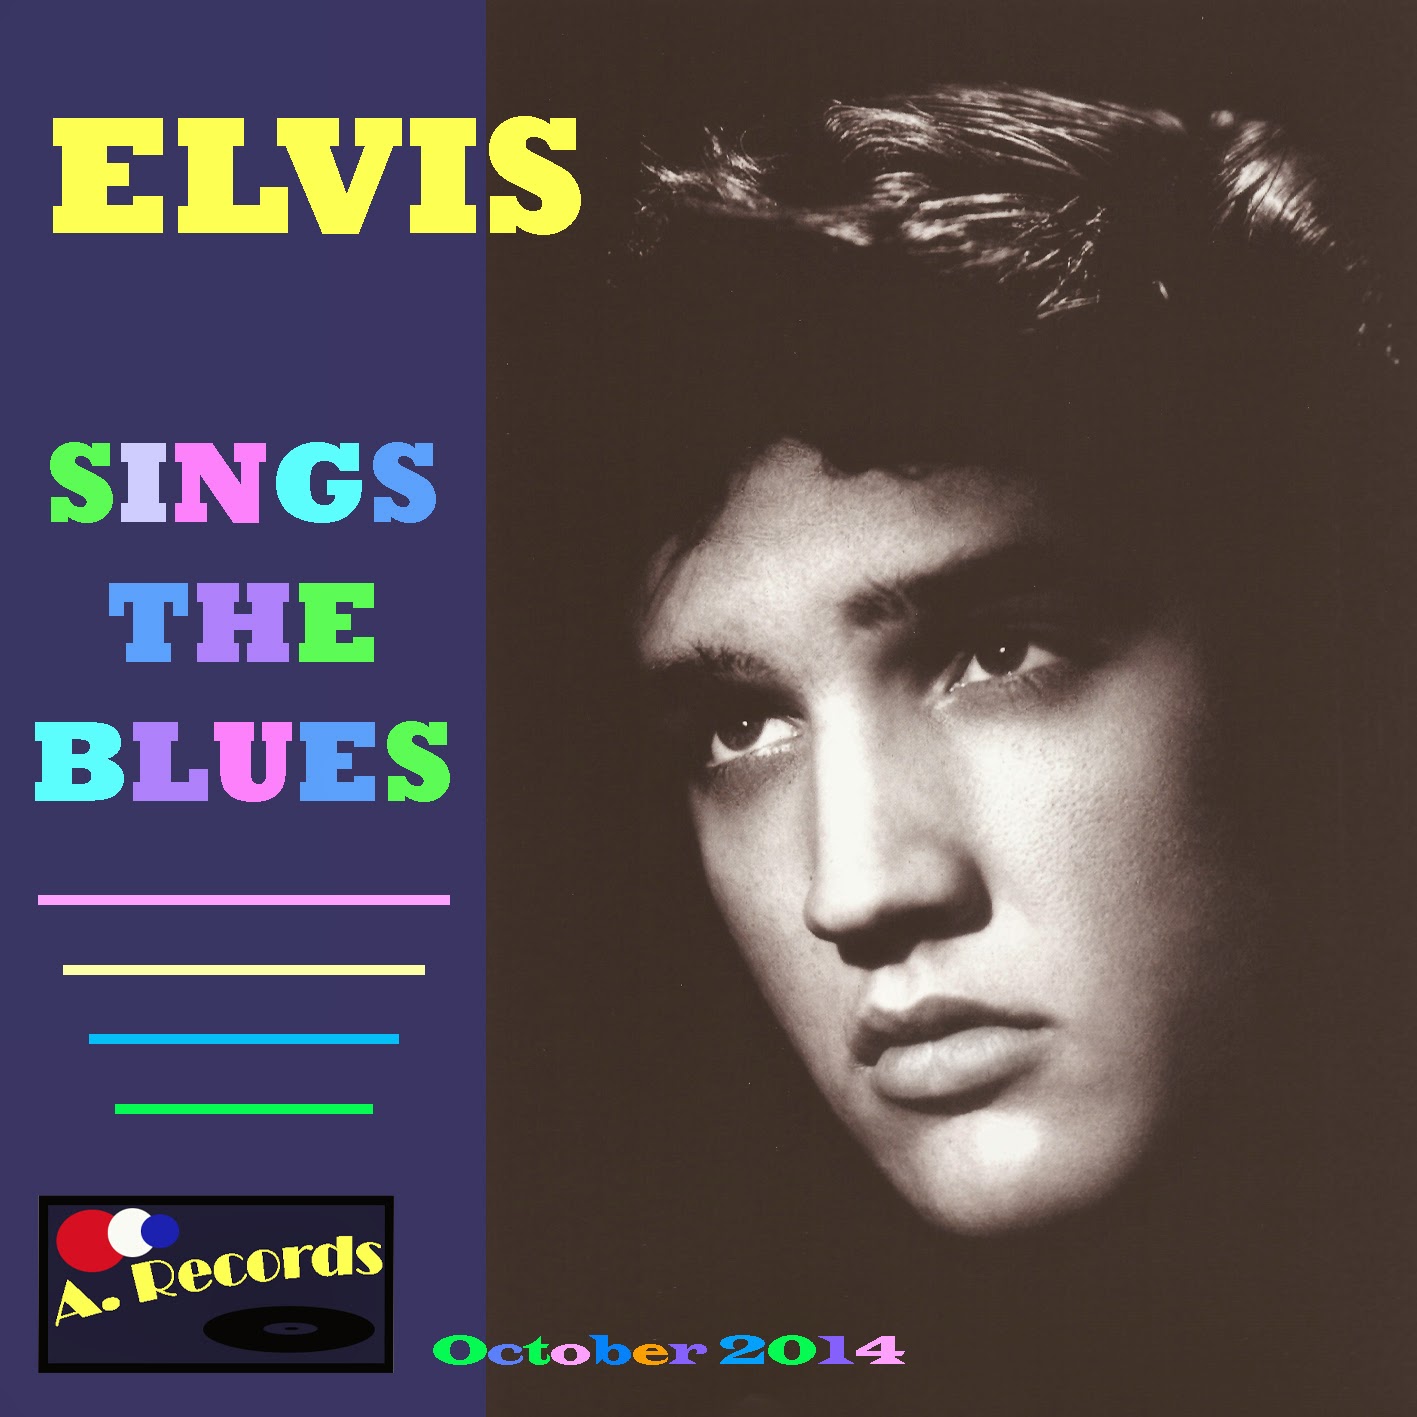 Elvis Sings The Blues (October 2014)